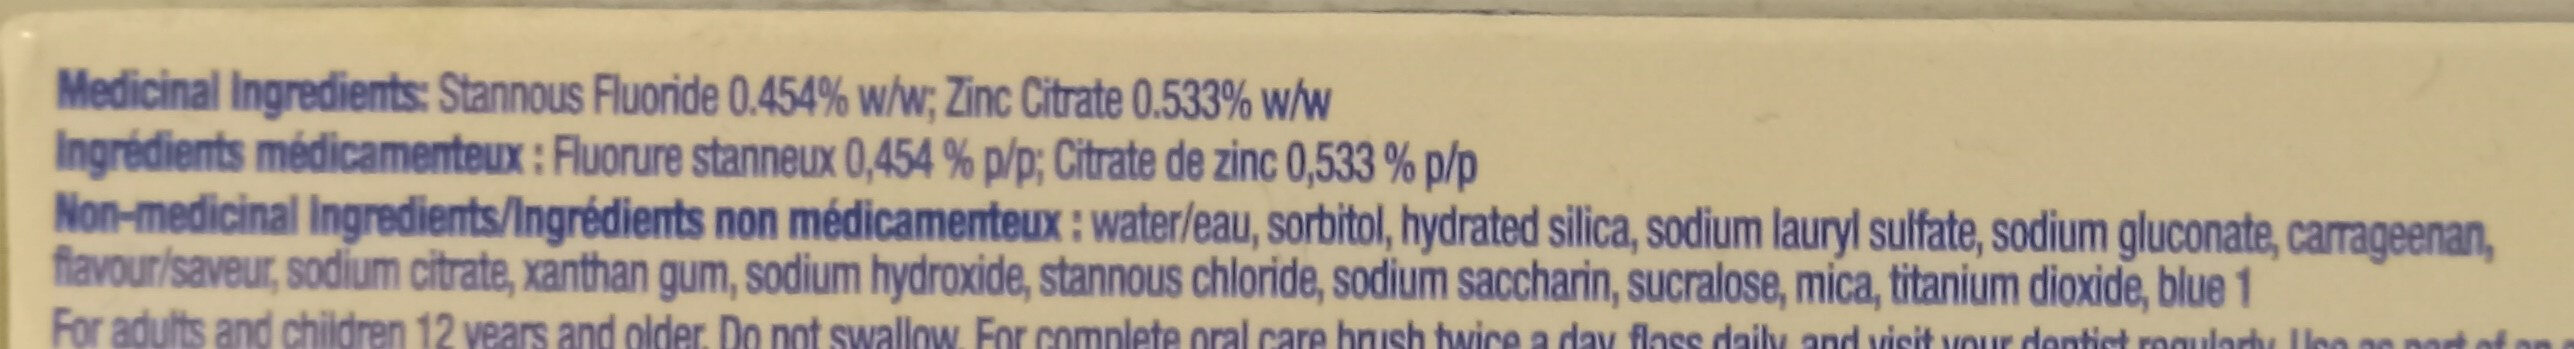 Whitening Gel Flouride Toothpaste - Ingrediencoj - en